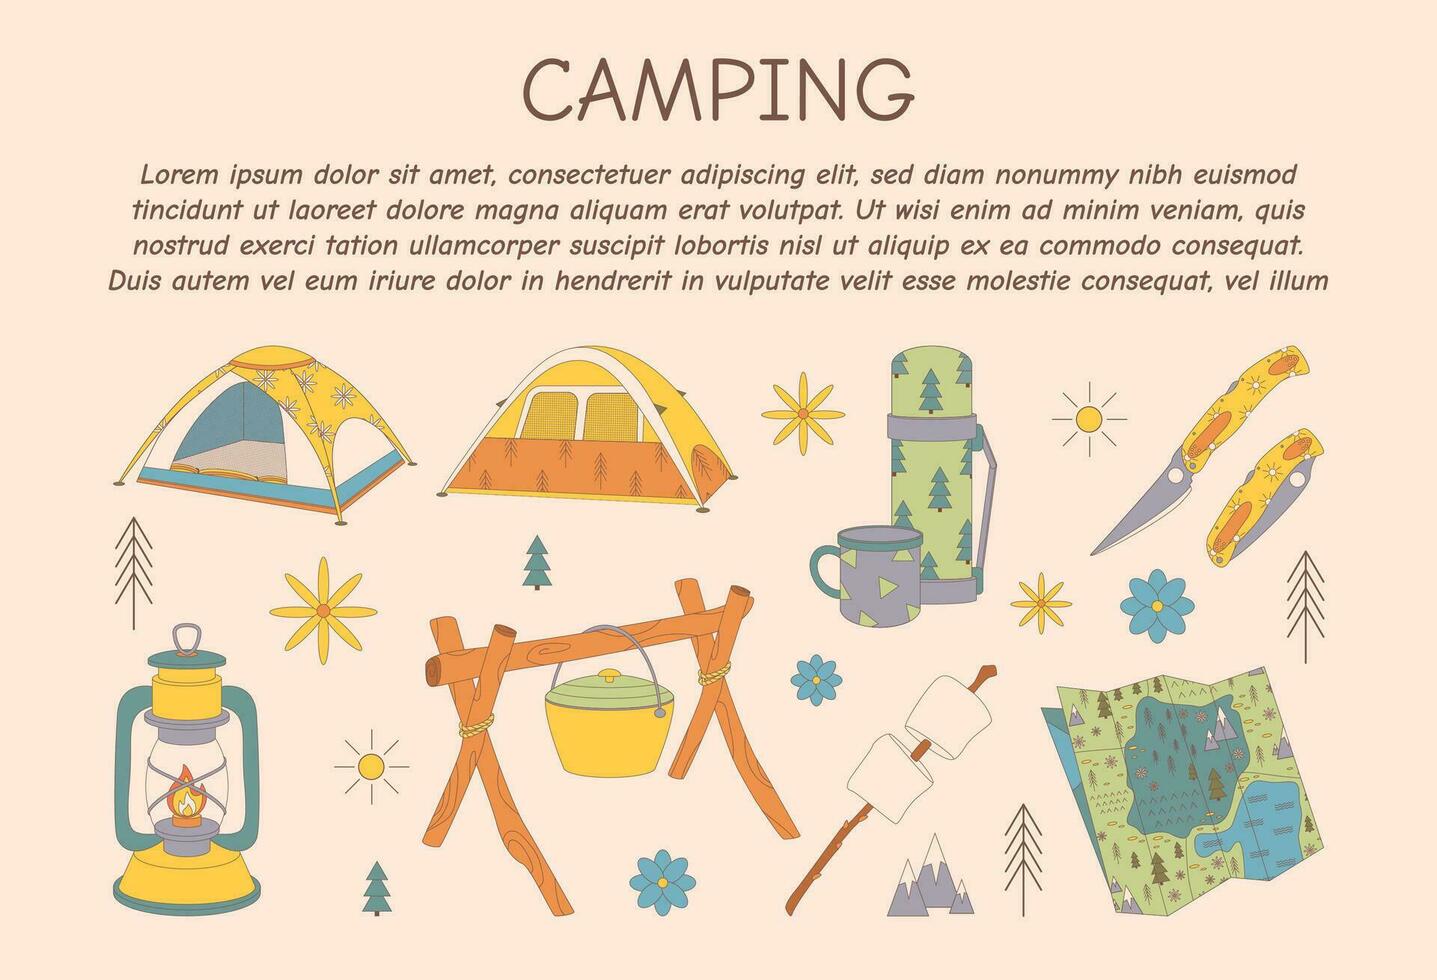 promotionele folder voor camping, reis, hiking, picknick. vector illustratie voor poster, banier, omslag, advertentie, web bladzijde.